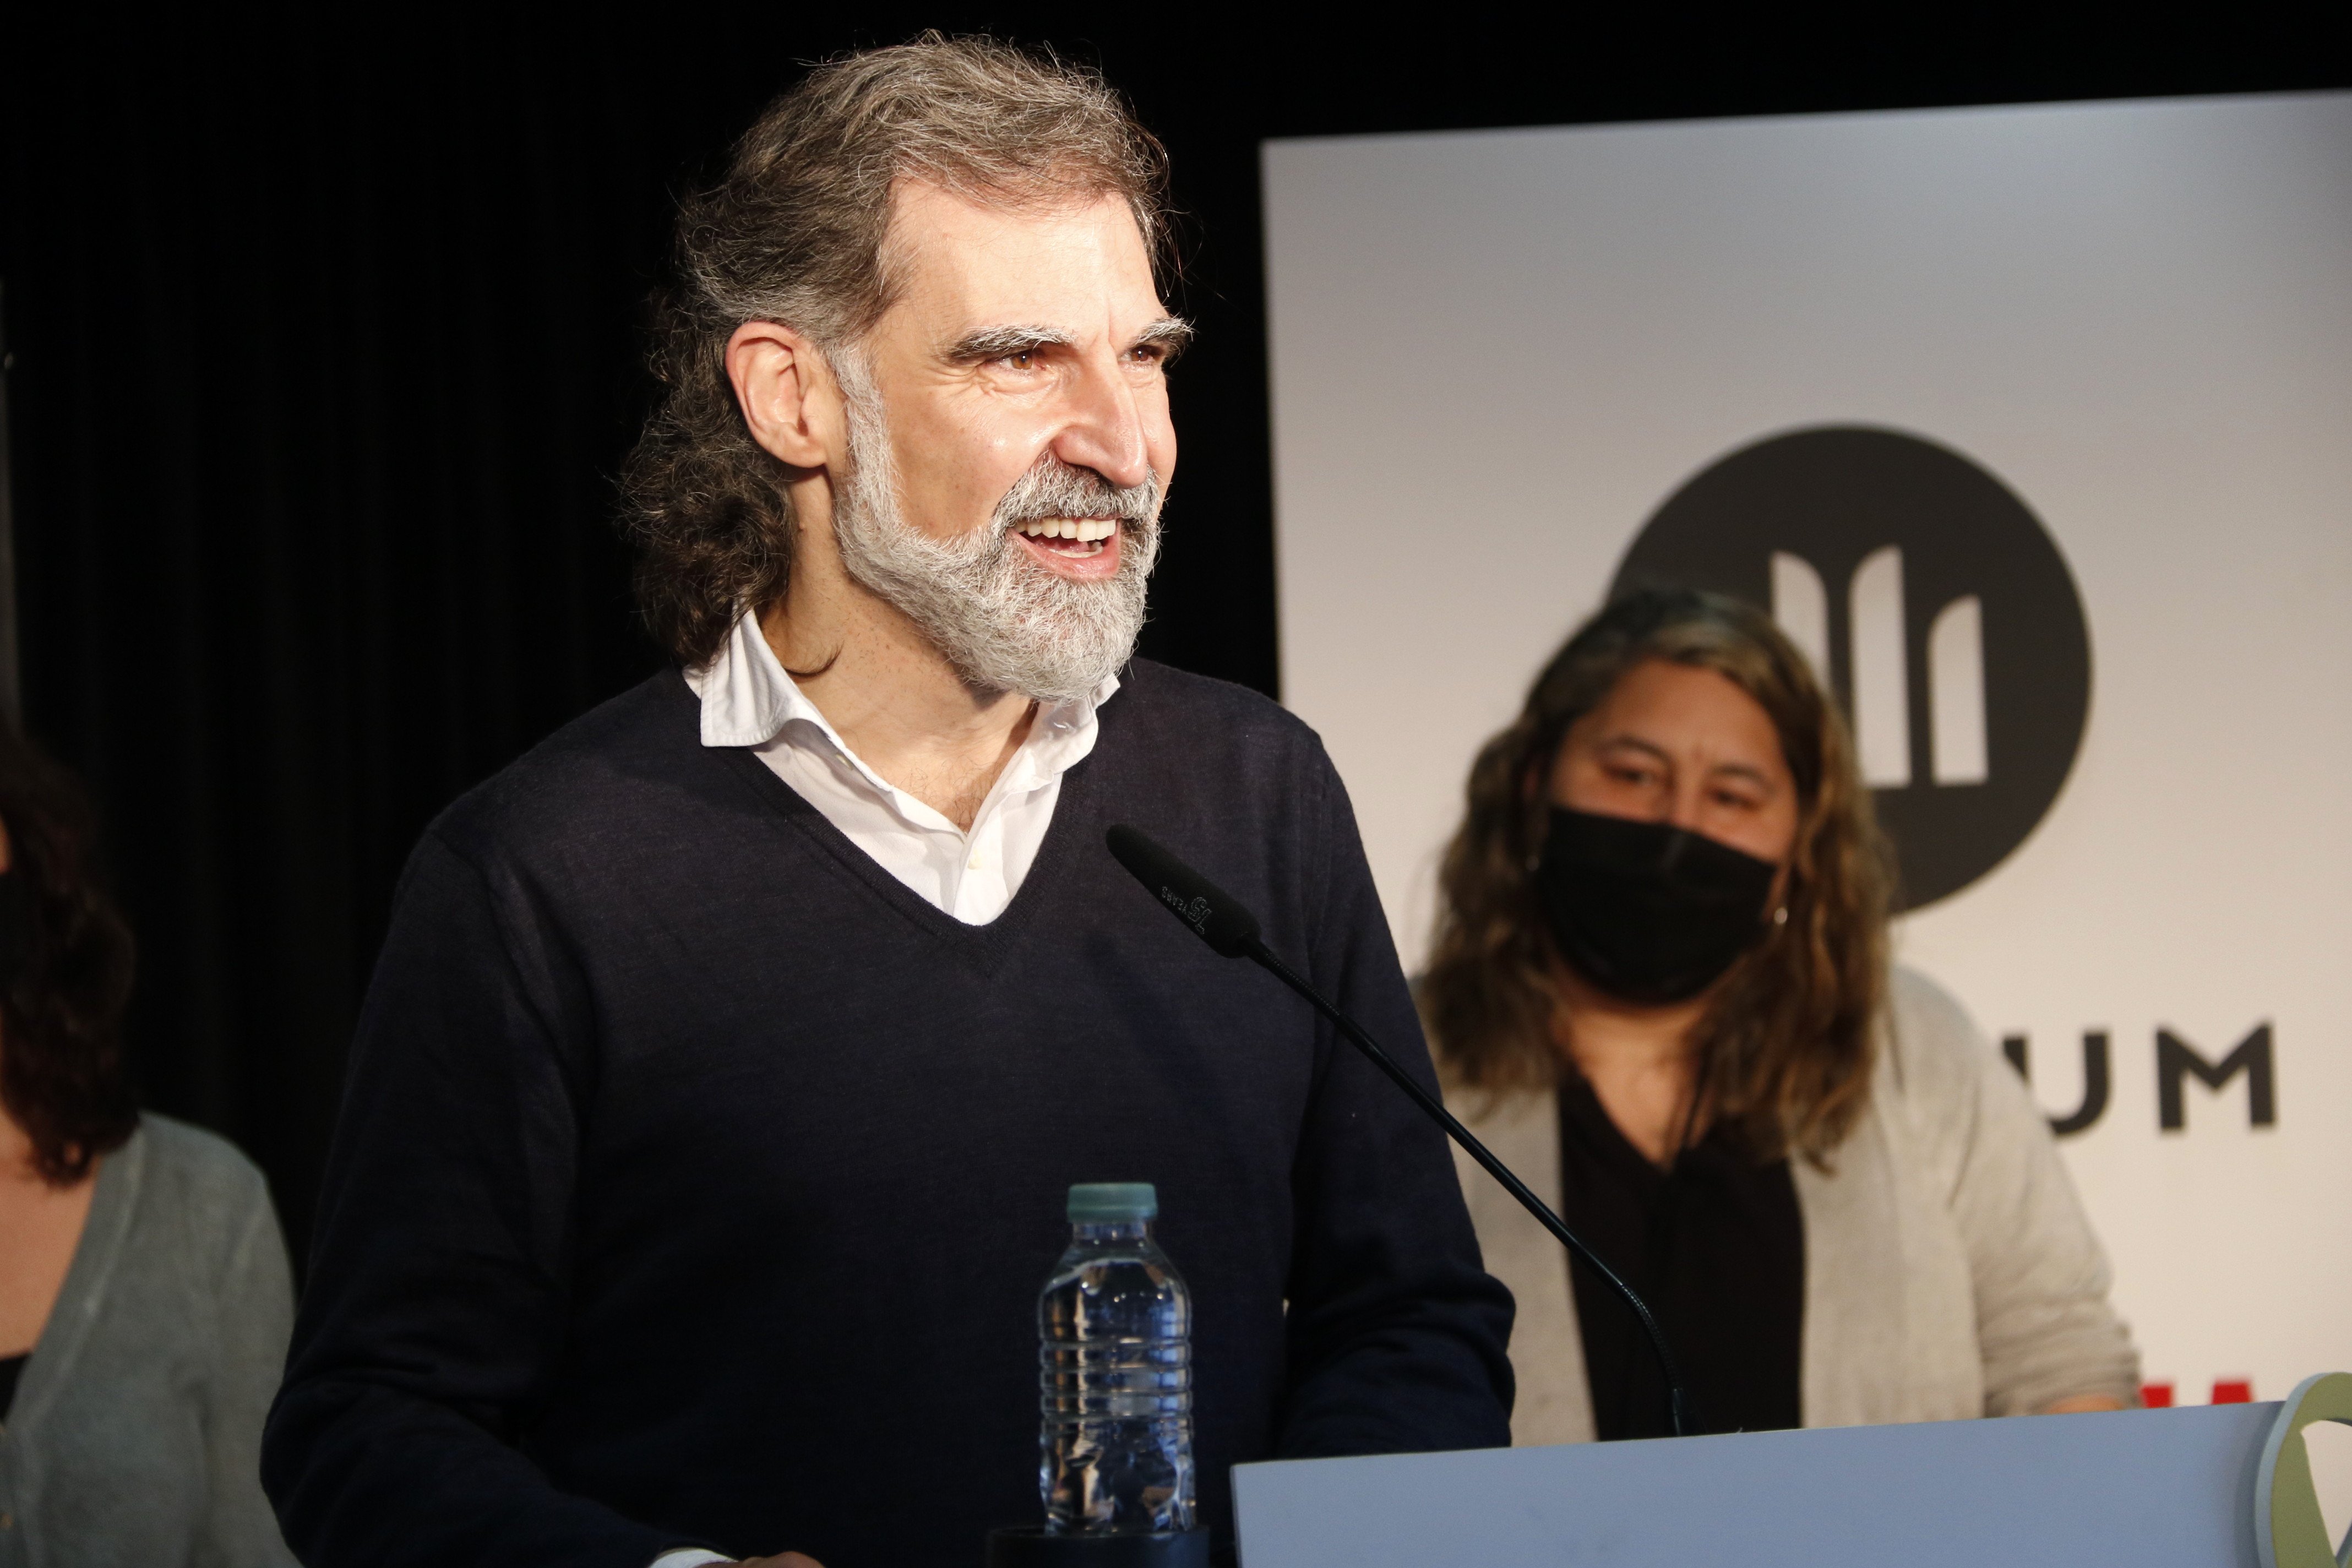 Cuixart pide al PSOE que pase de la derecha "por impedir el debate democrático"